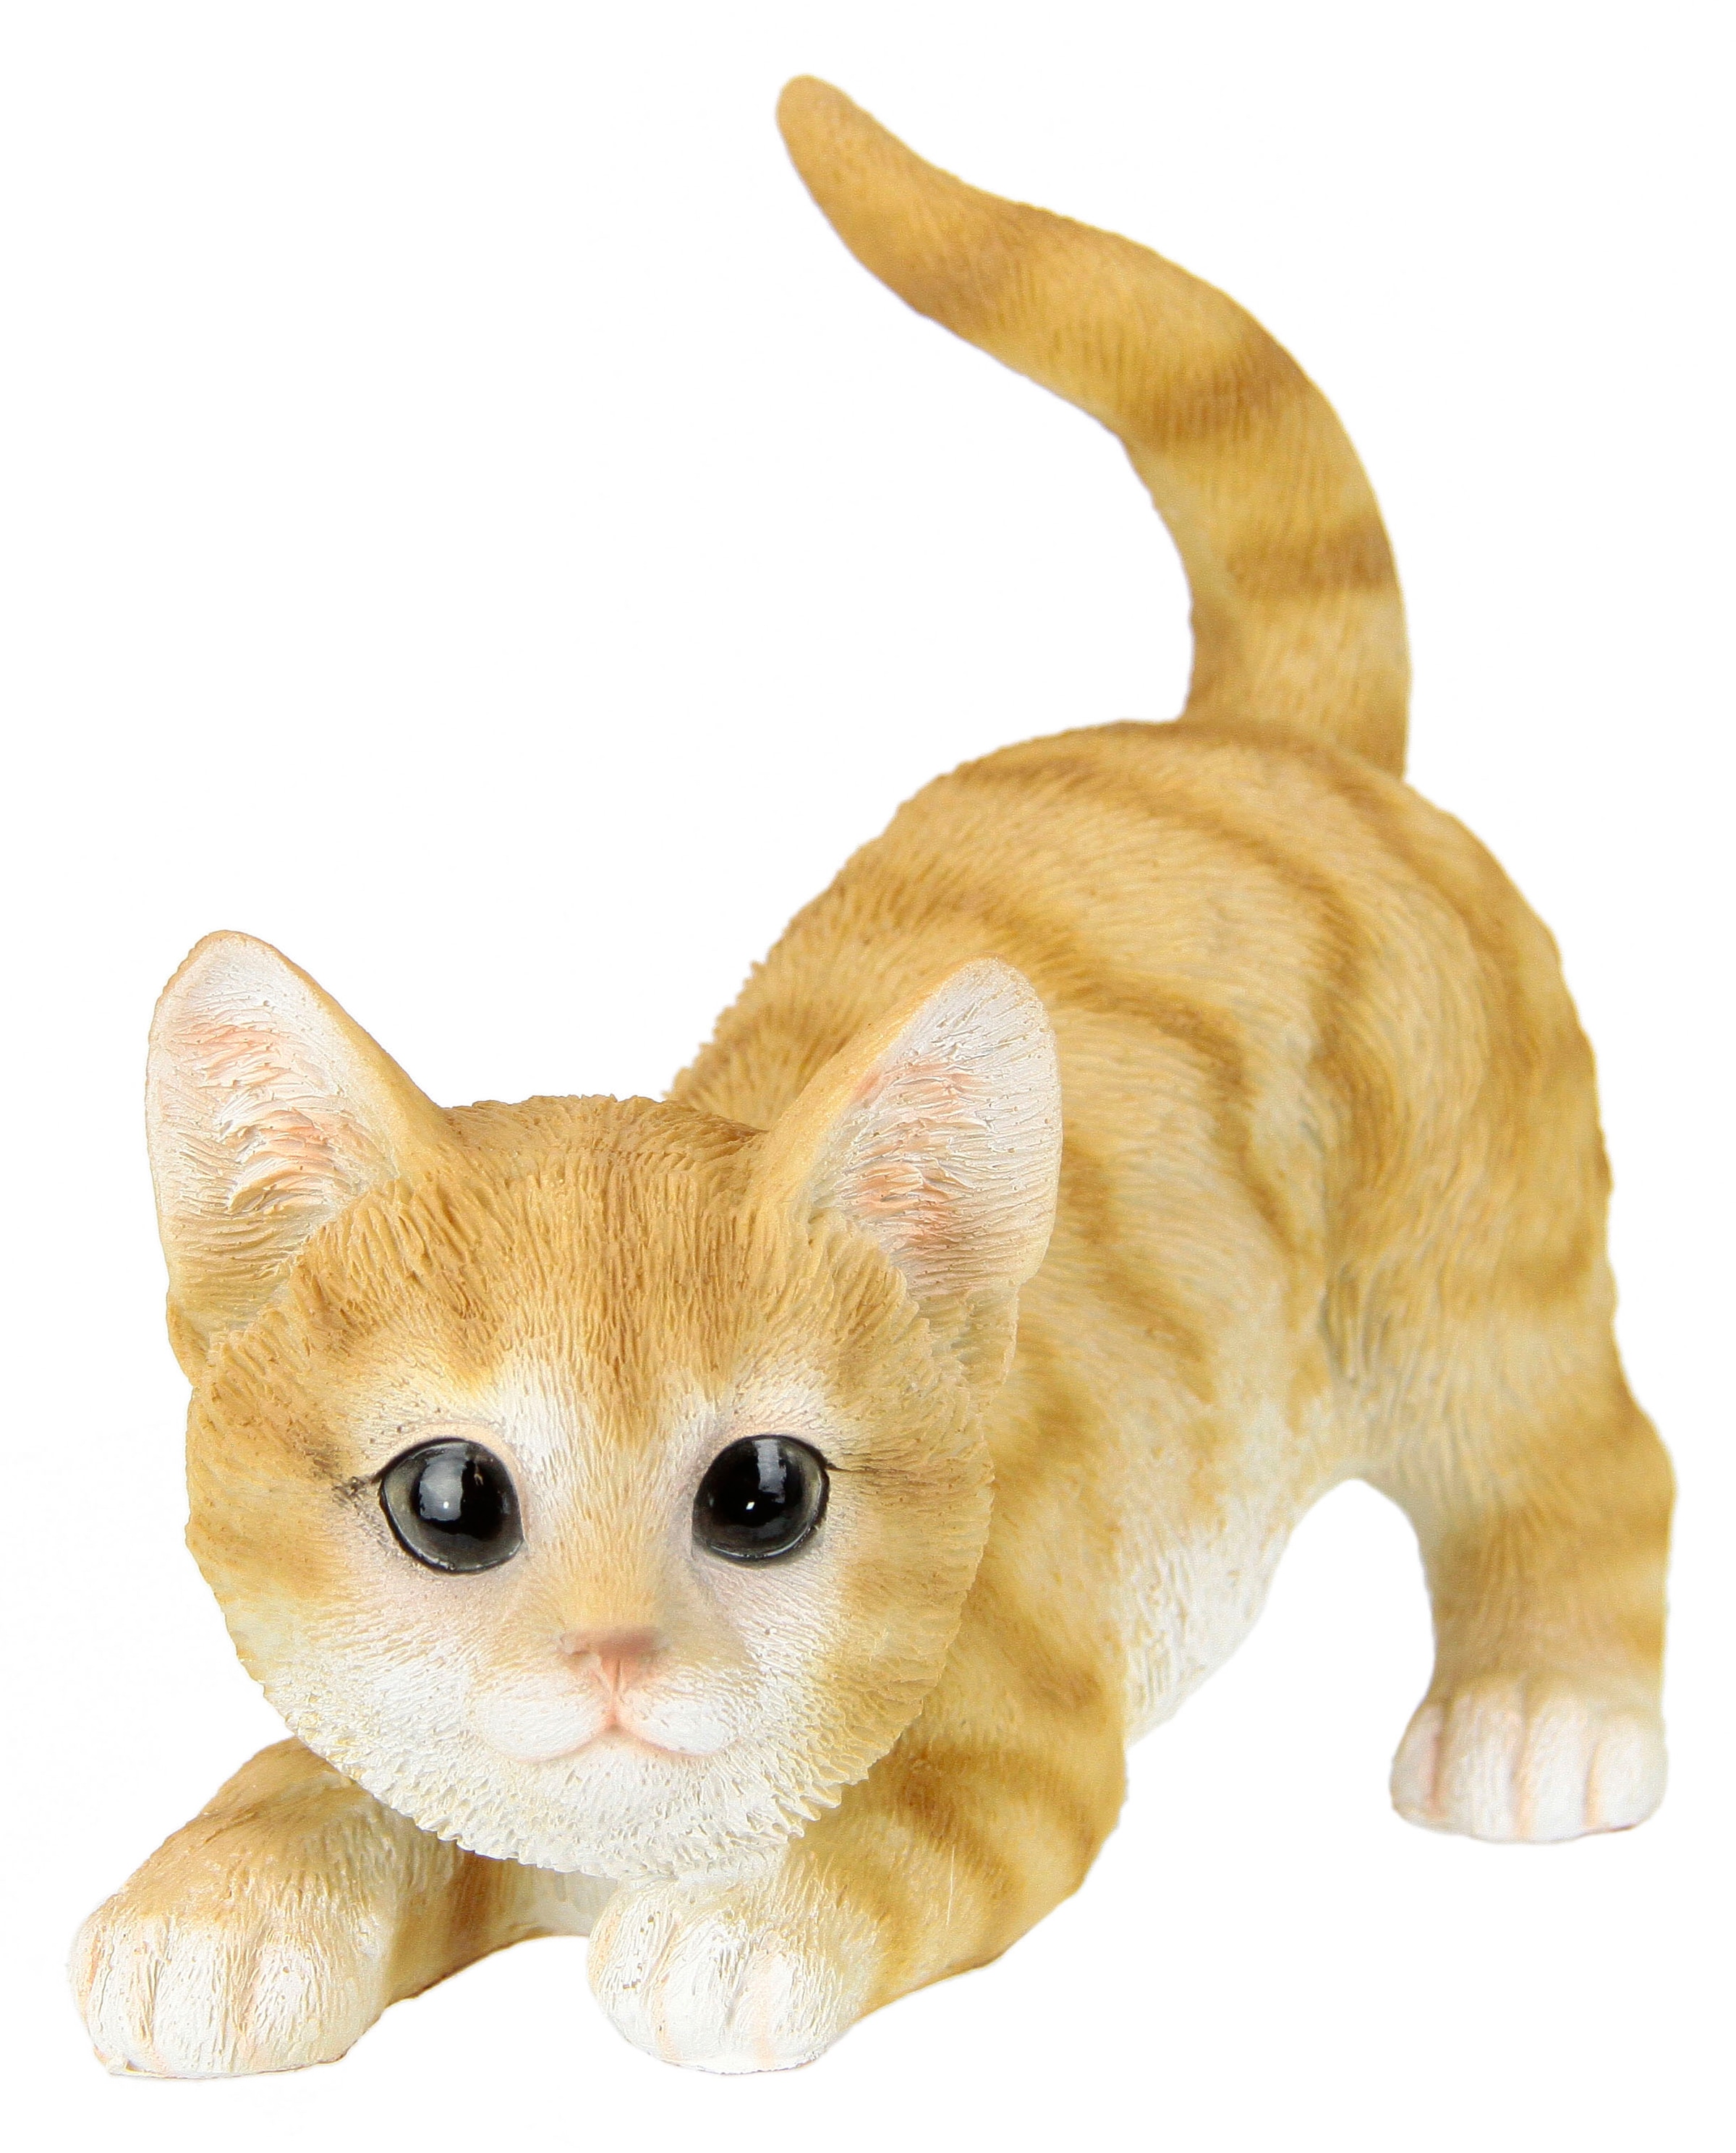 Dekofigur Rechnung Katzenfigur, »Katze«, kaufen getigerte I.GE.A. auf Tierfigur